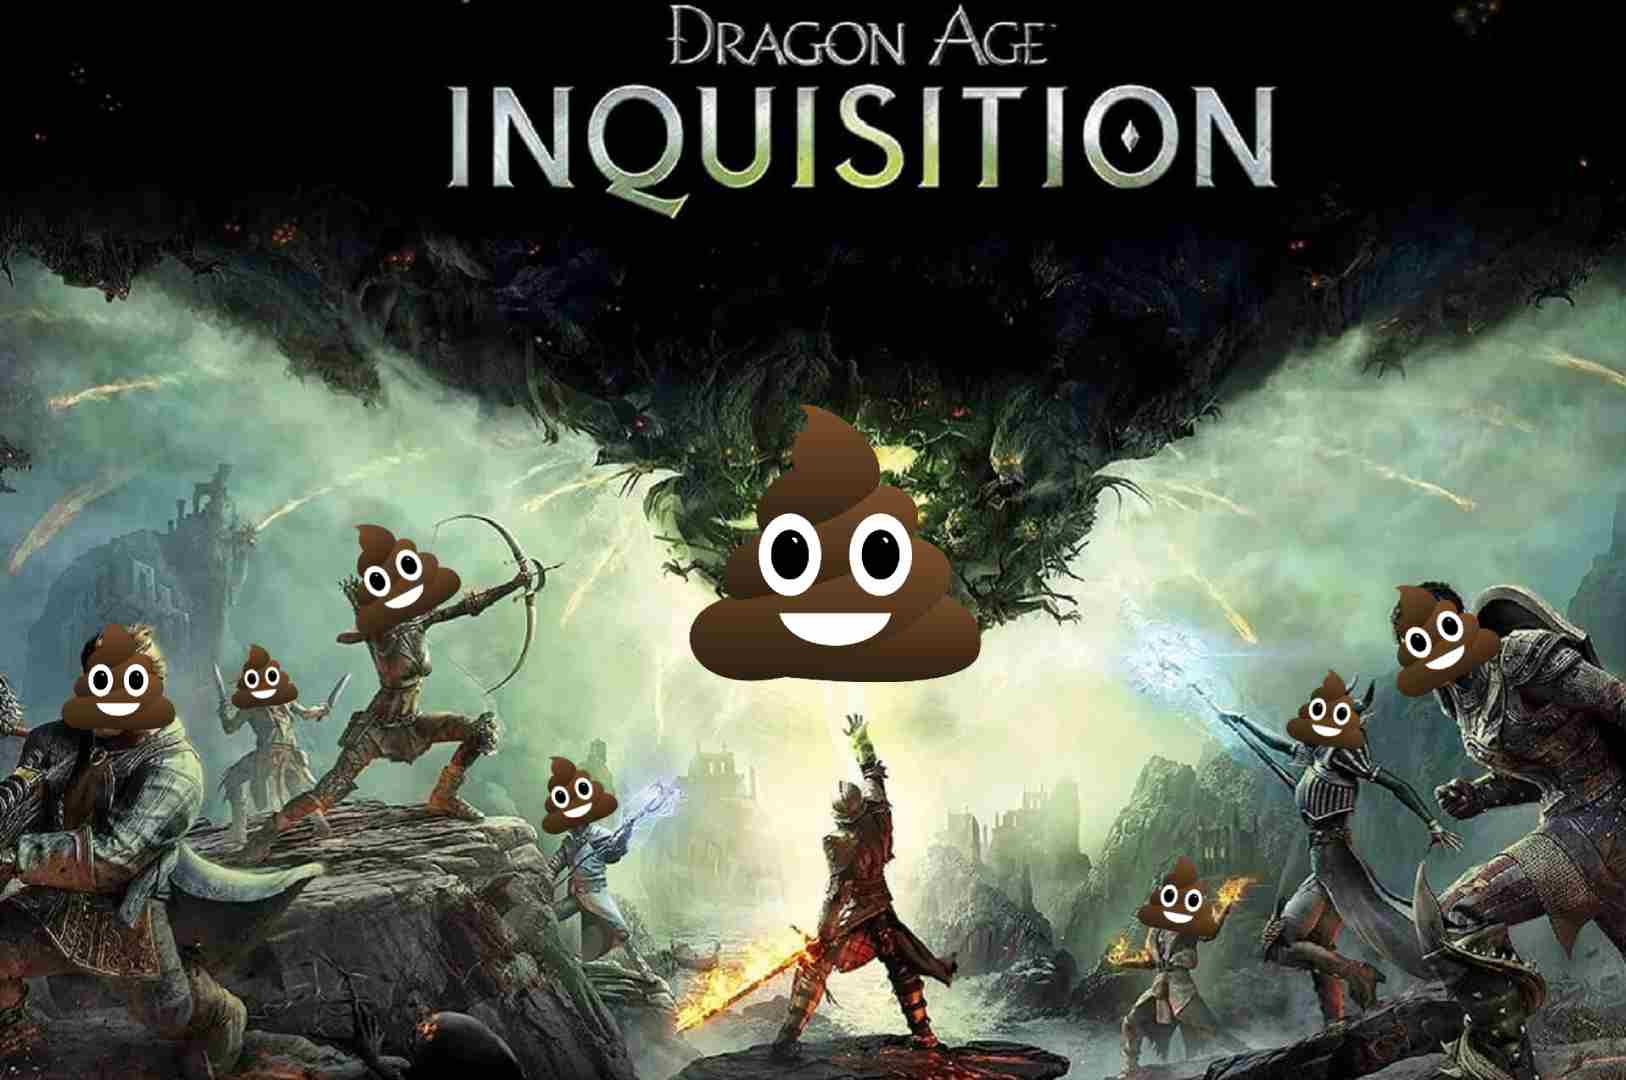 Porquê detestei Dragon Age Inquisition